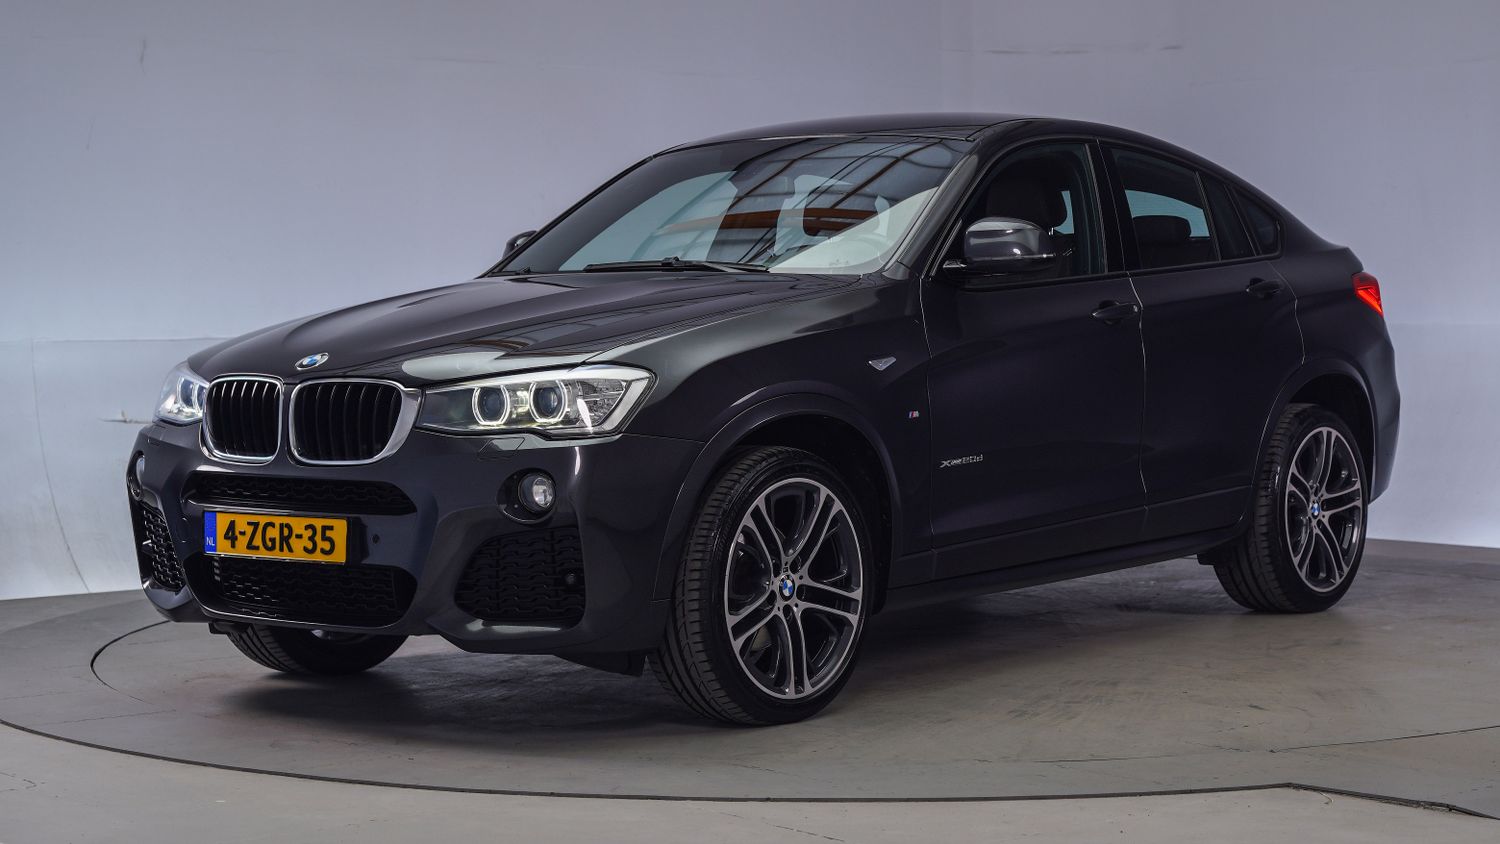 BMW X4 SUV / Terreinwagen 2015 4-ZGR-35 1